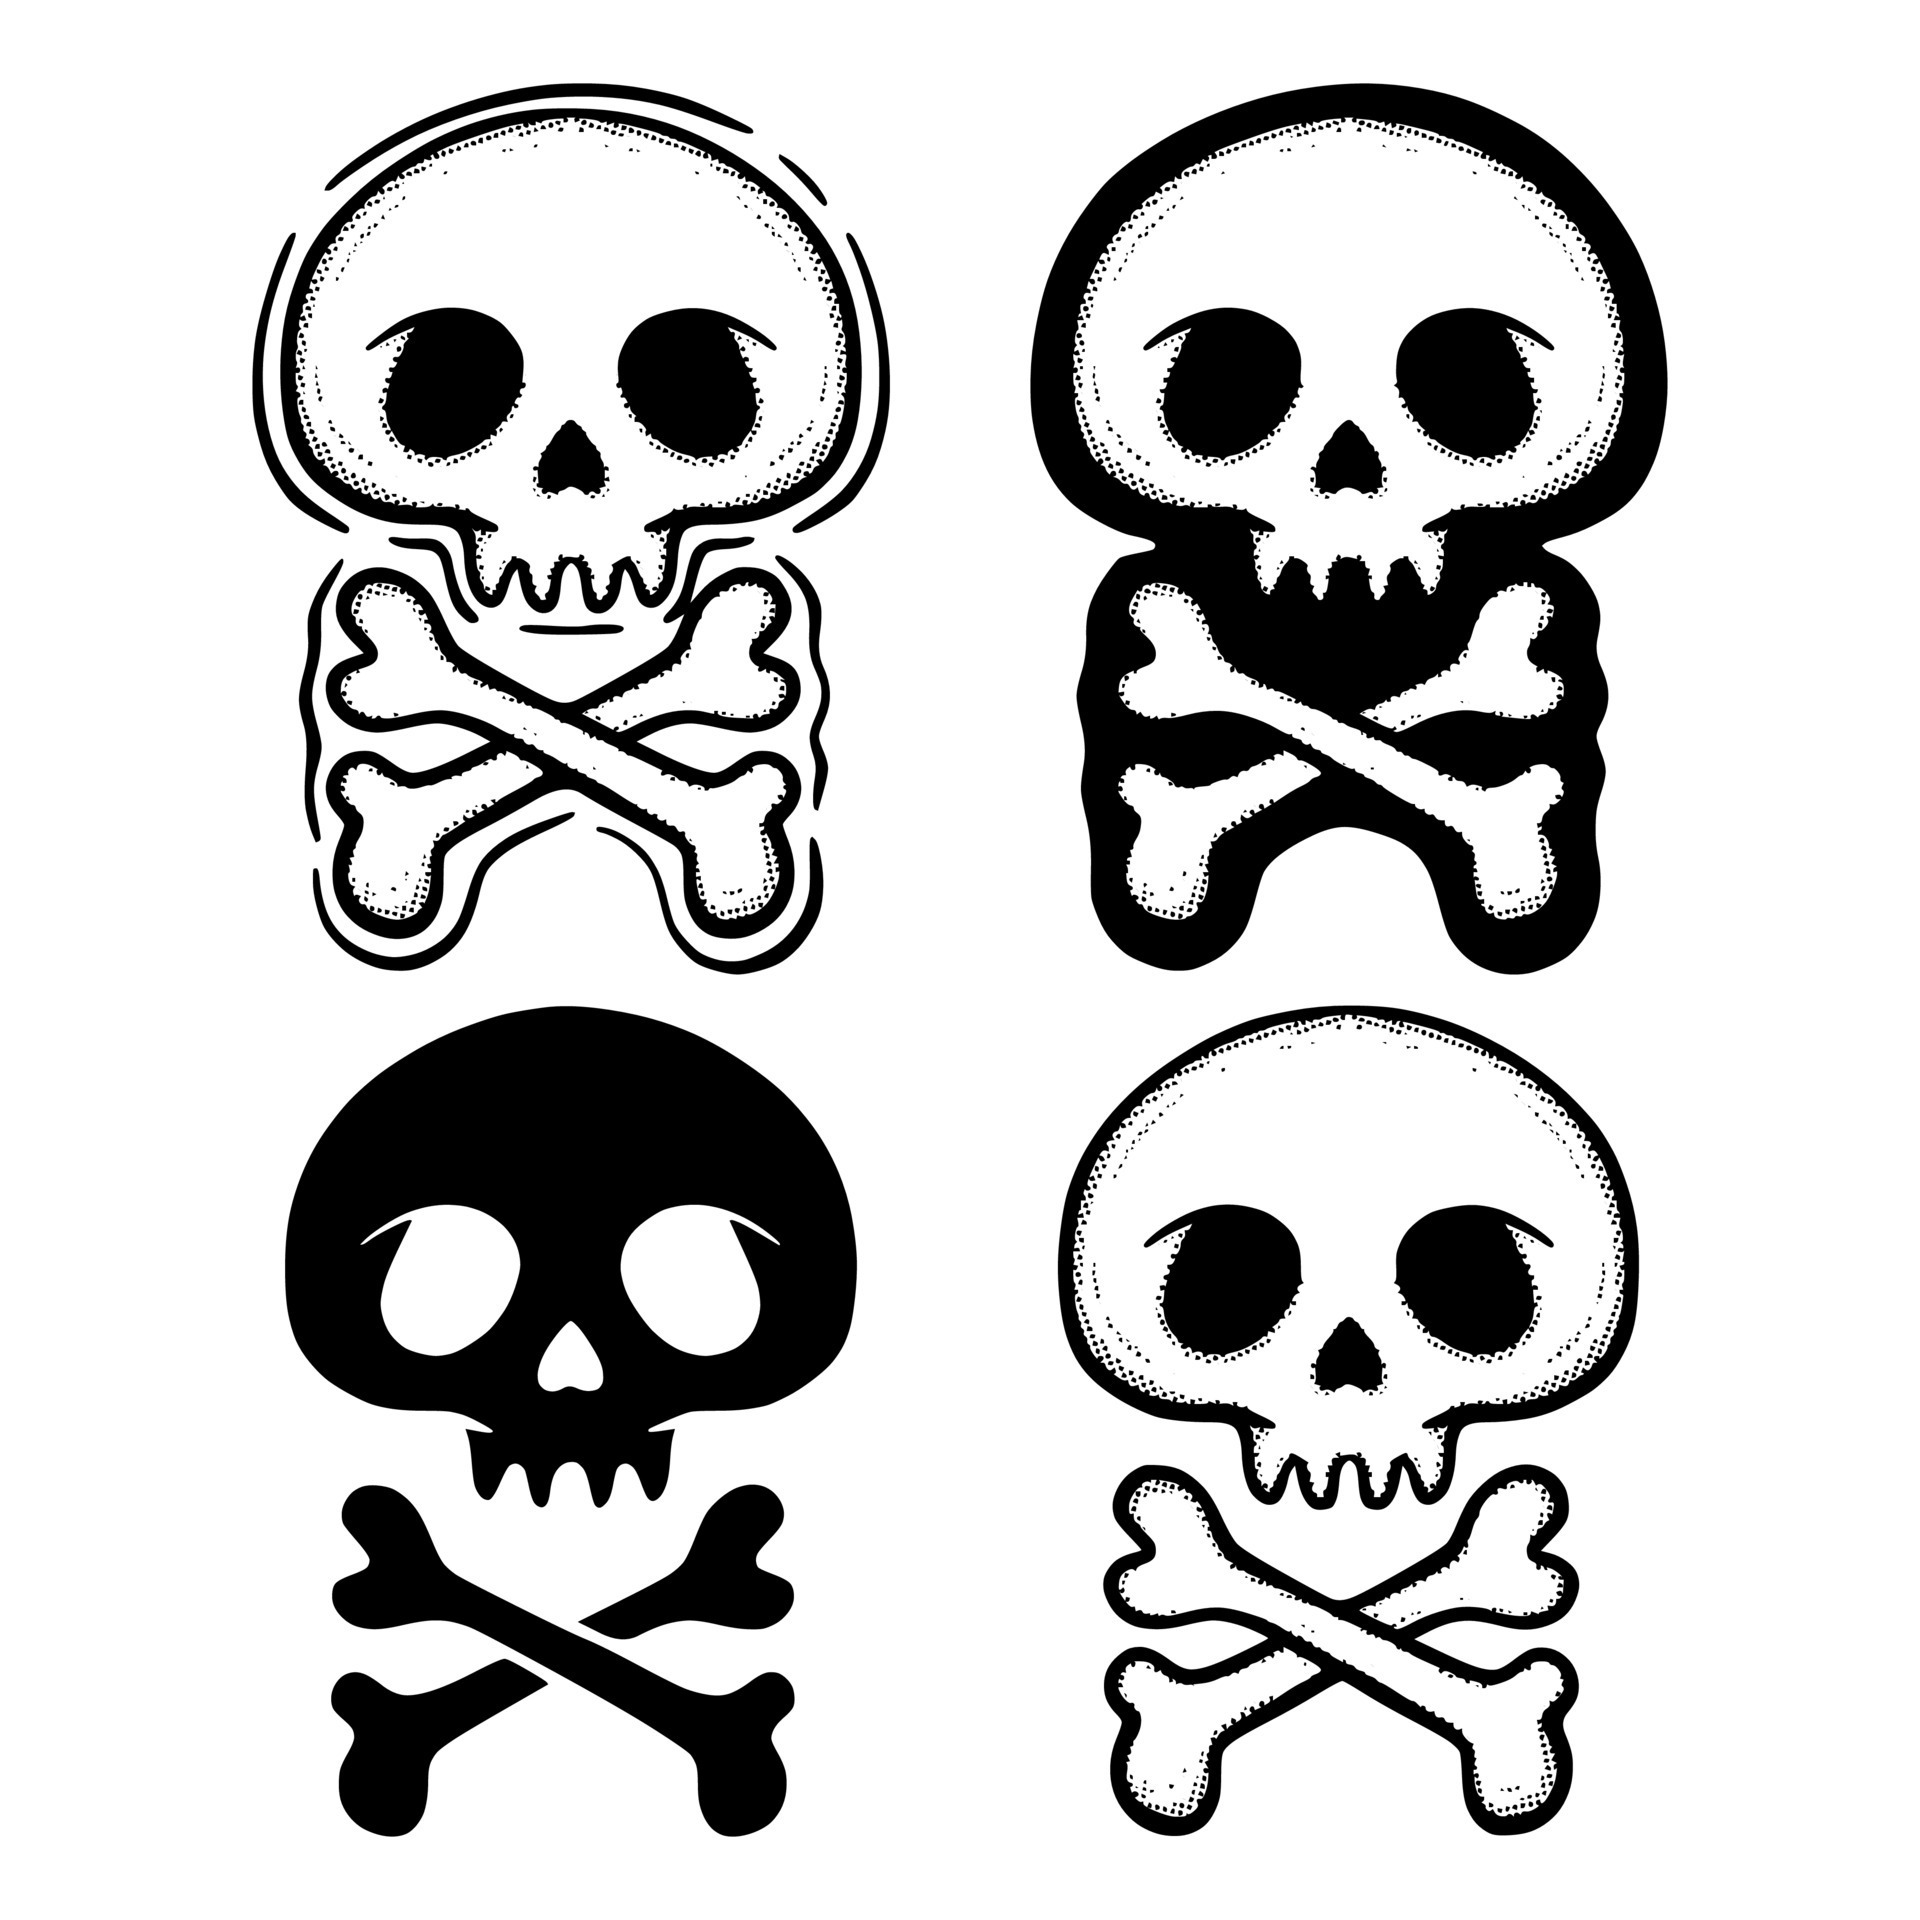 Skull and Crossbones Tattoo Design Poster  Etsy